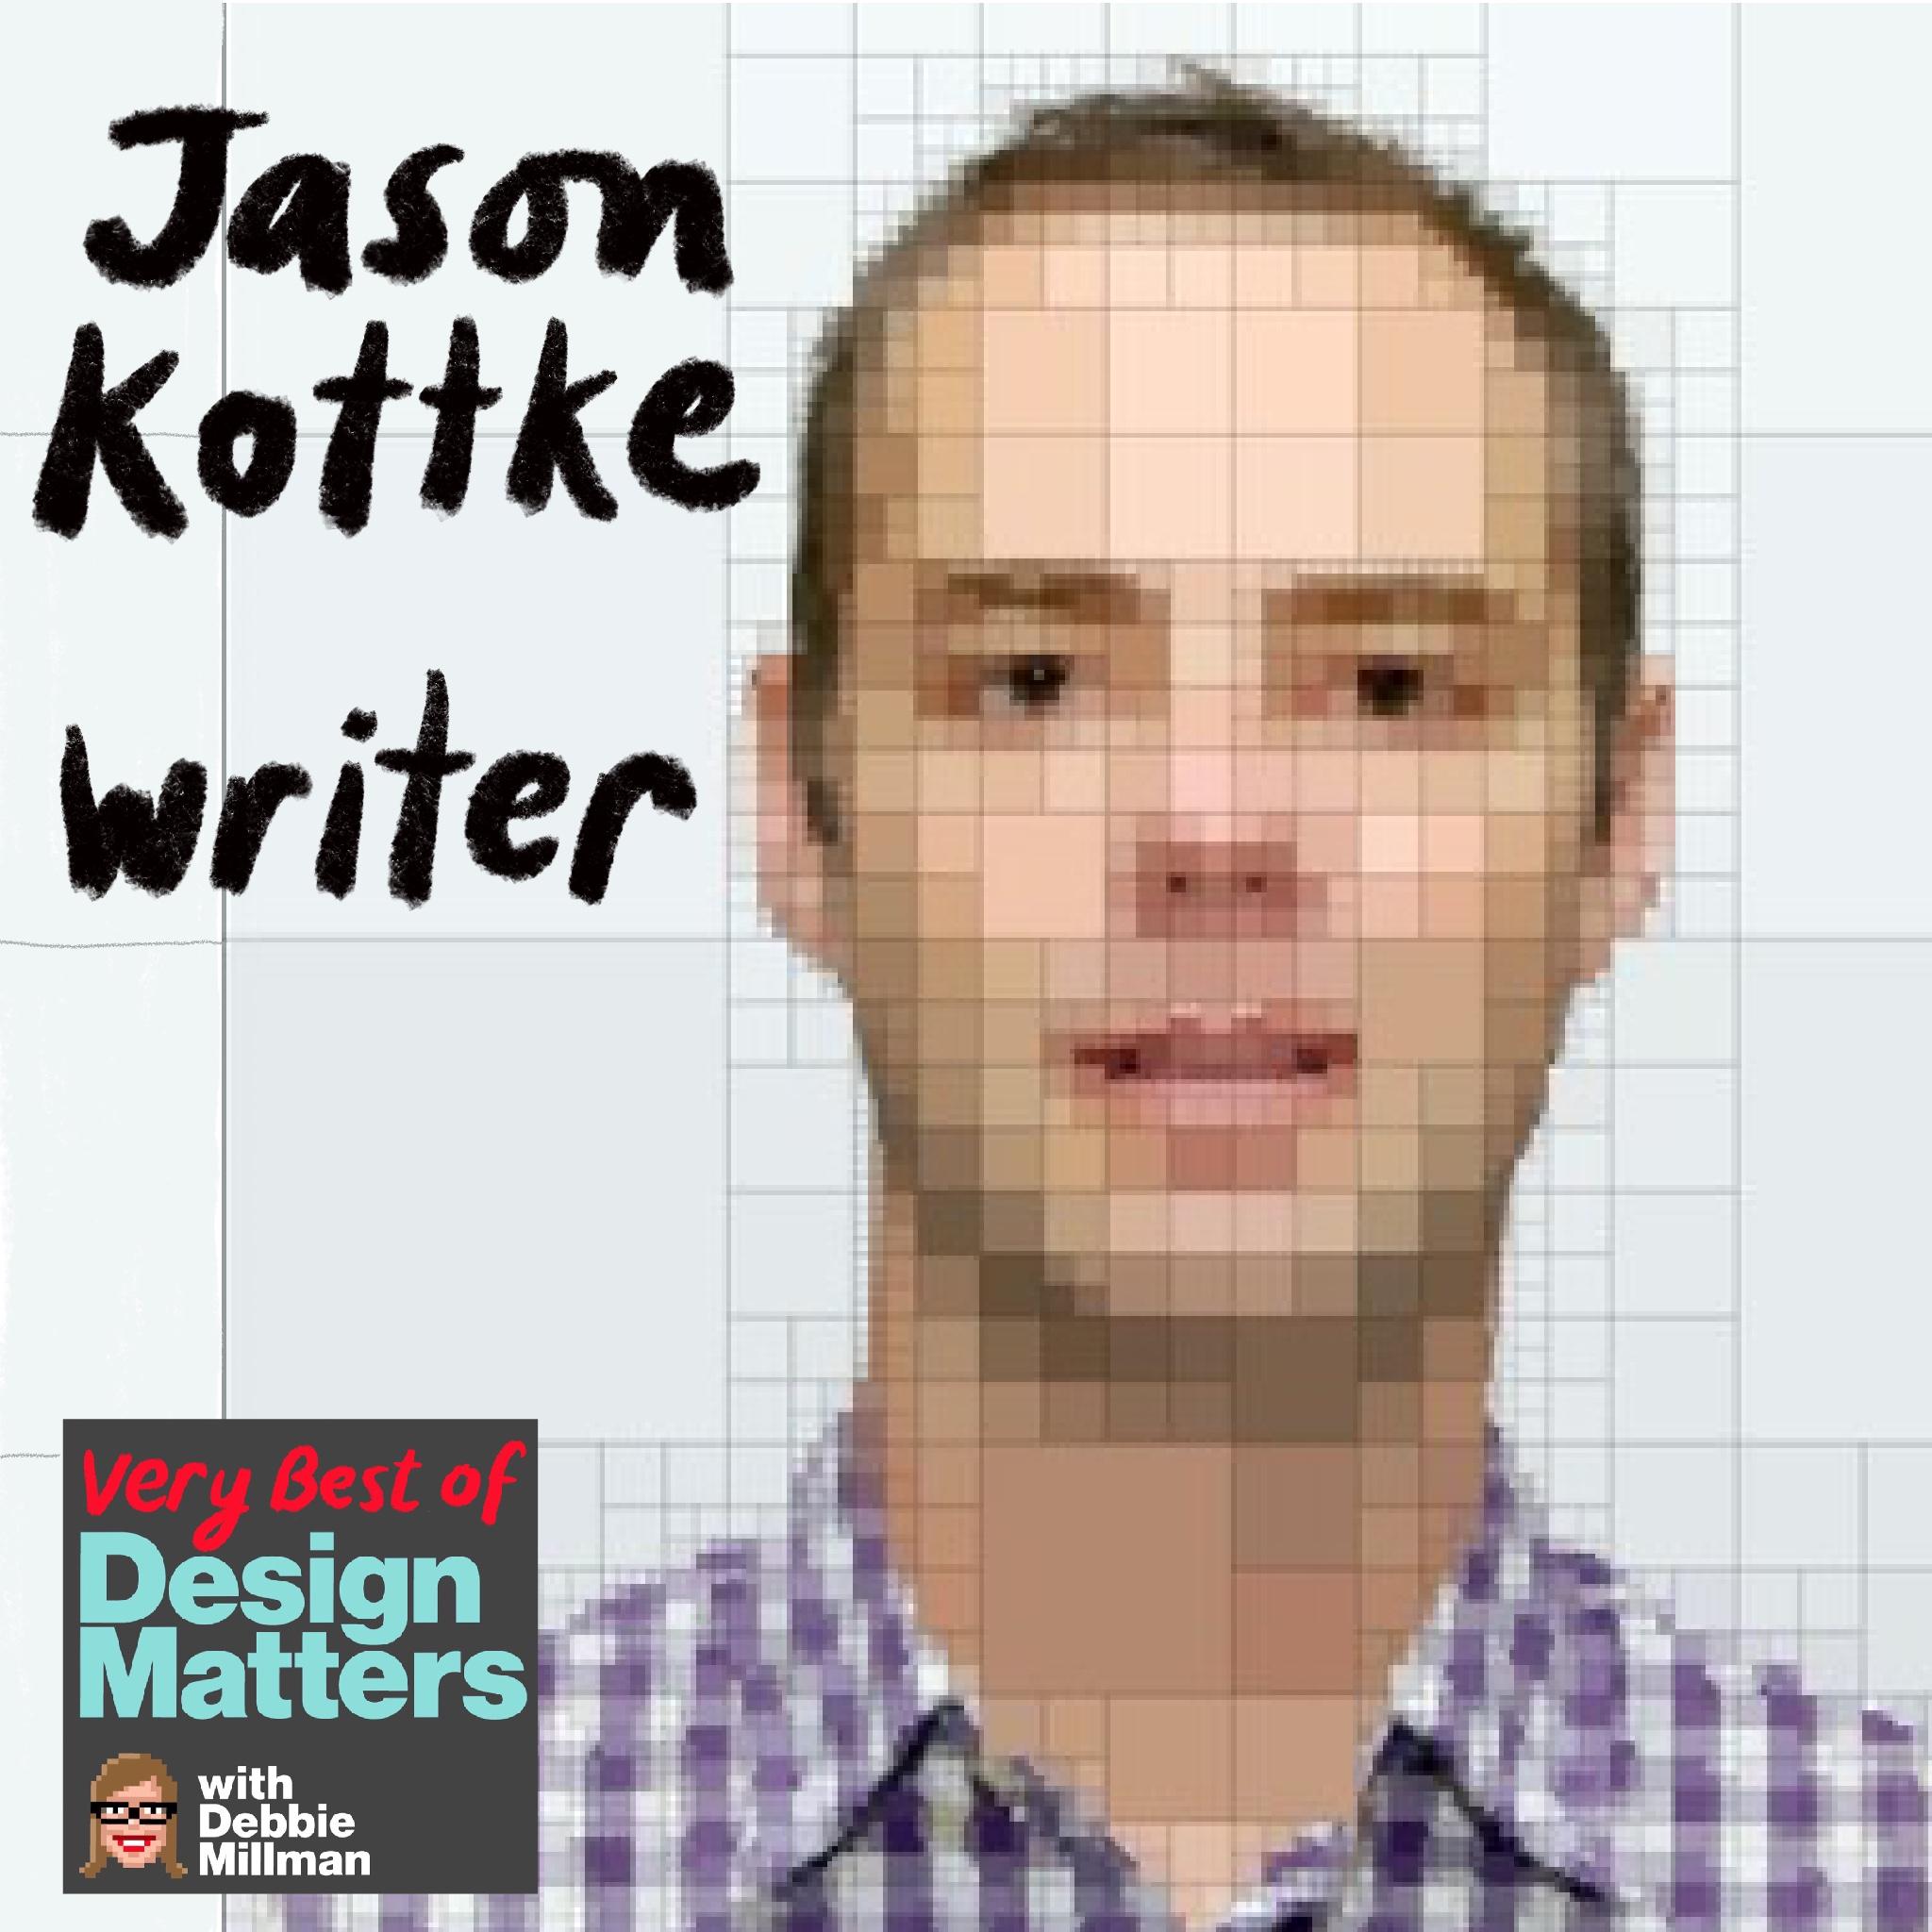 Thumbnail for "Best of Design Matters: Jason Kottke".